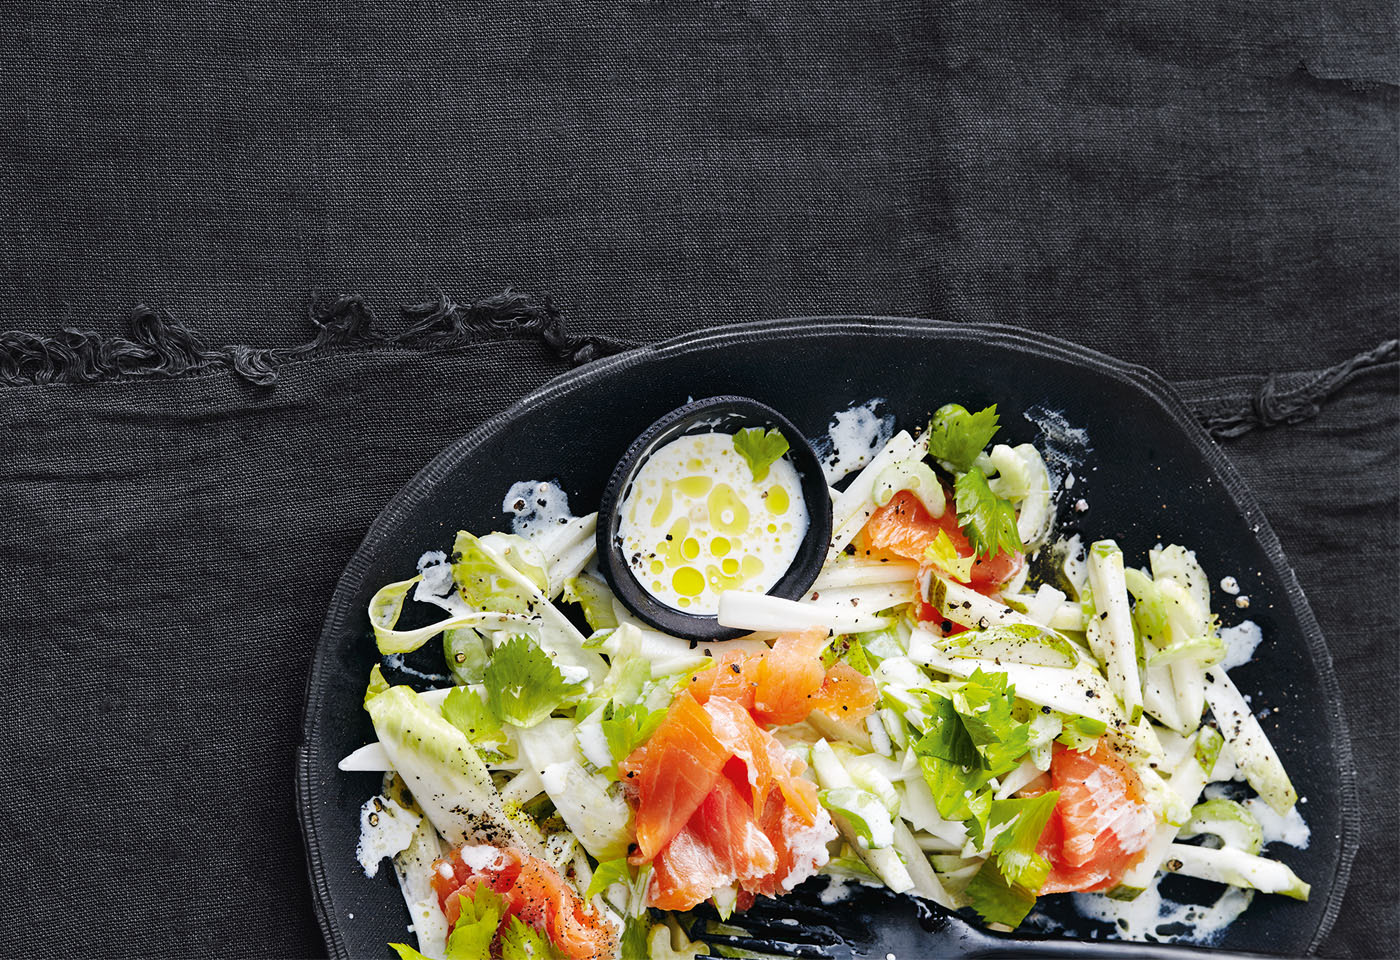 Chicorée-Salat mit Birnen und Räucherlachs | Frisch Gekocht